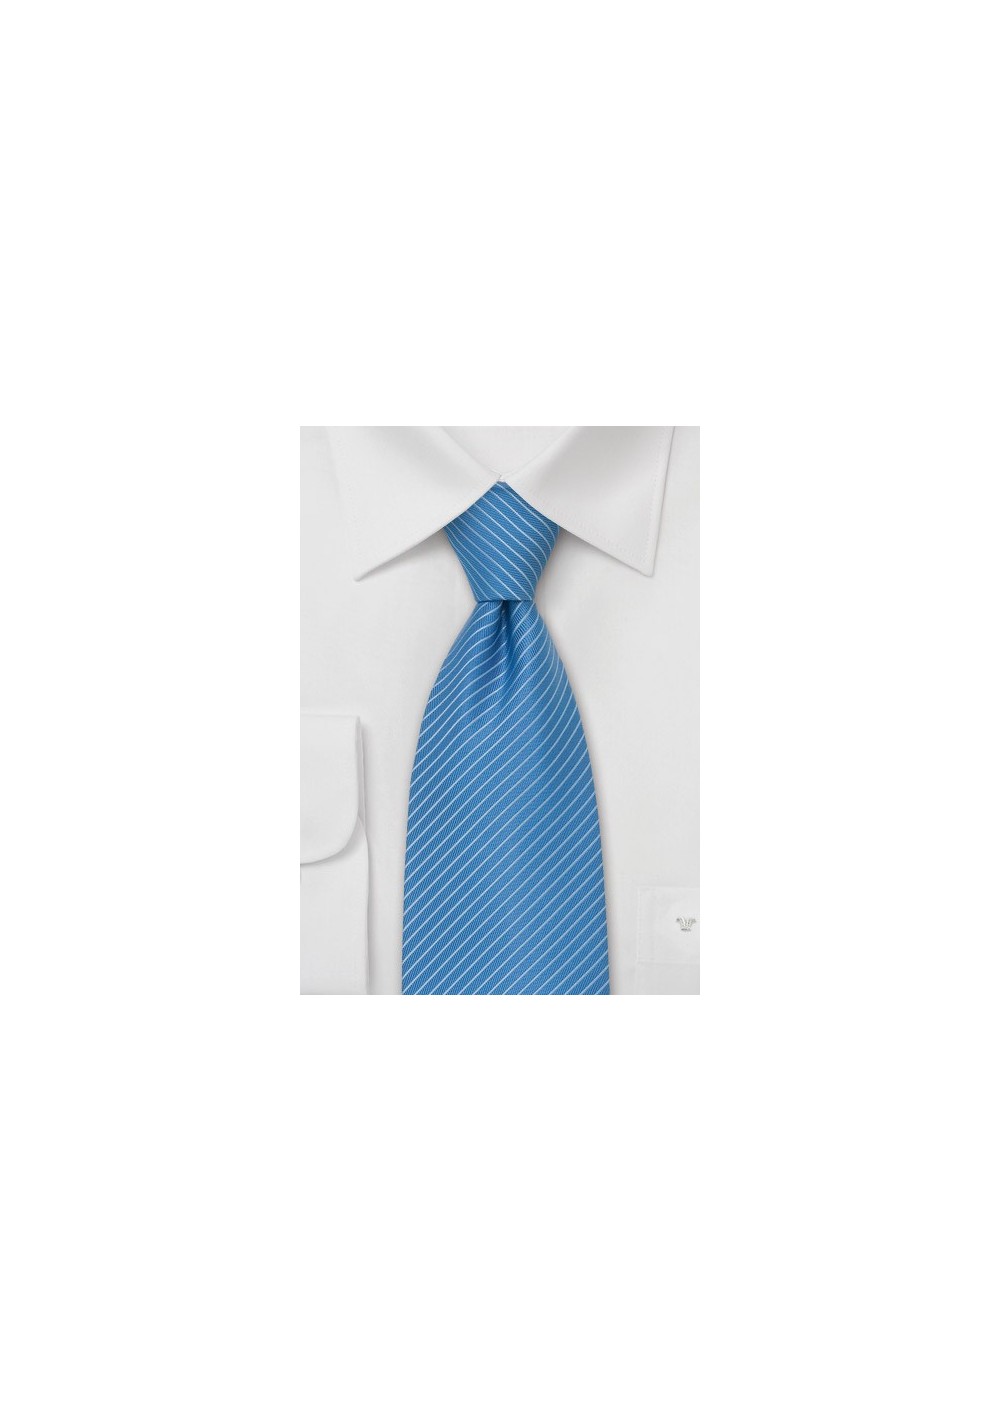 Light Blue Ties - Modern Striped Tie in Cornflower Blue